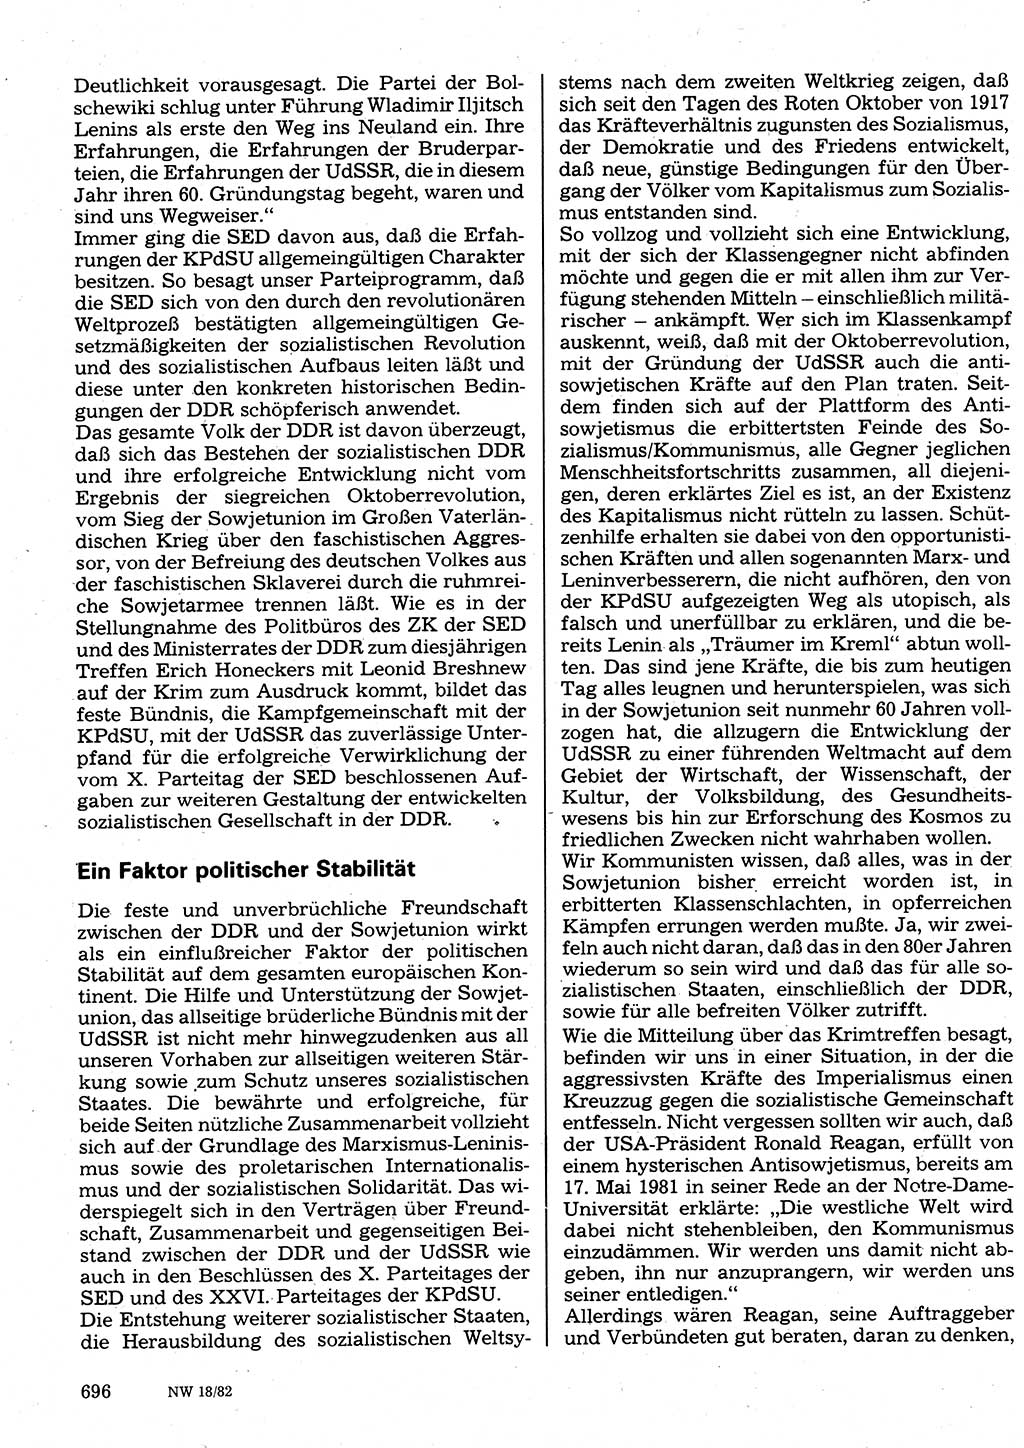 Neuer Weg (NW), Organ des Zentralkomitees (ZK) der SED (Sozialistische Einheitspartei Deutschlands) für Fragen des Parteilebens, 37. Jahrgang [Deutsche Demokratische Republik (DDR)] 1982, Seite 696 (NW ZK SED DDR 1982, S. 696)